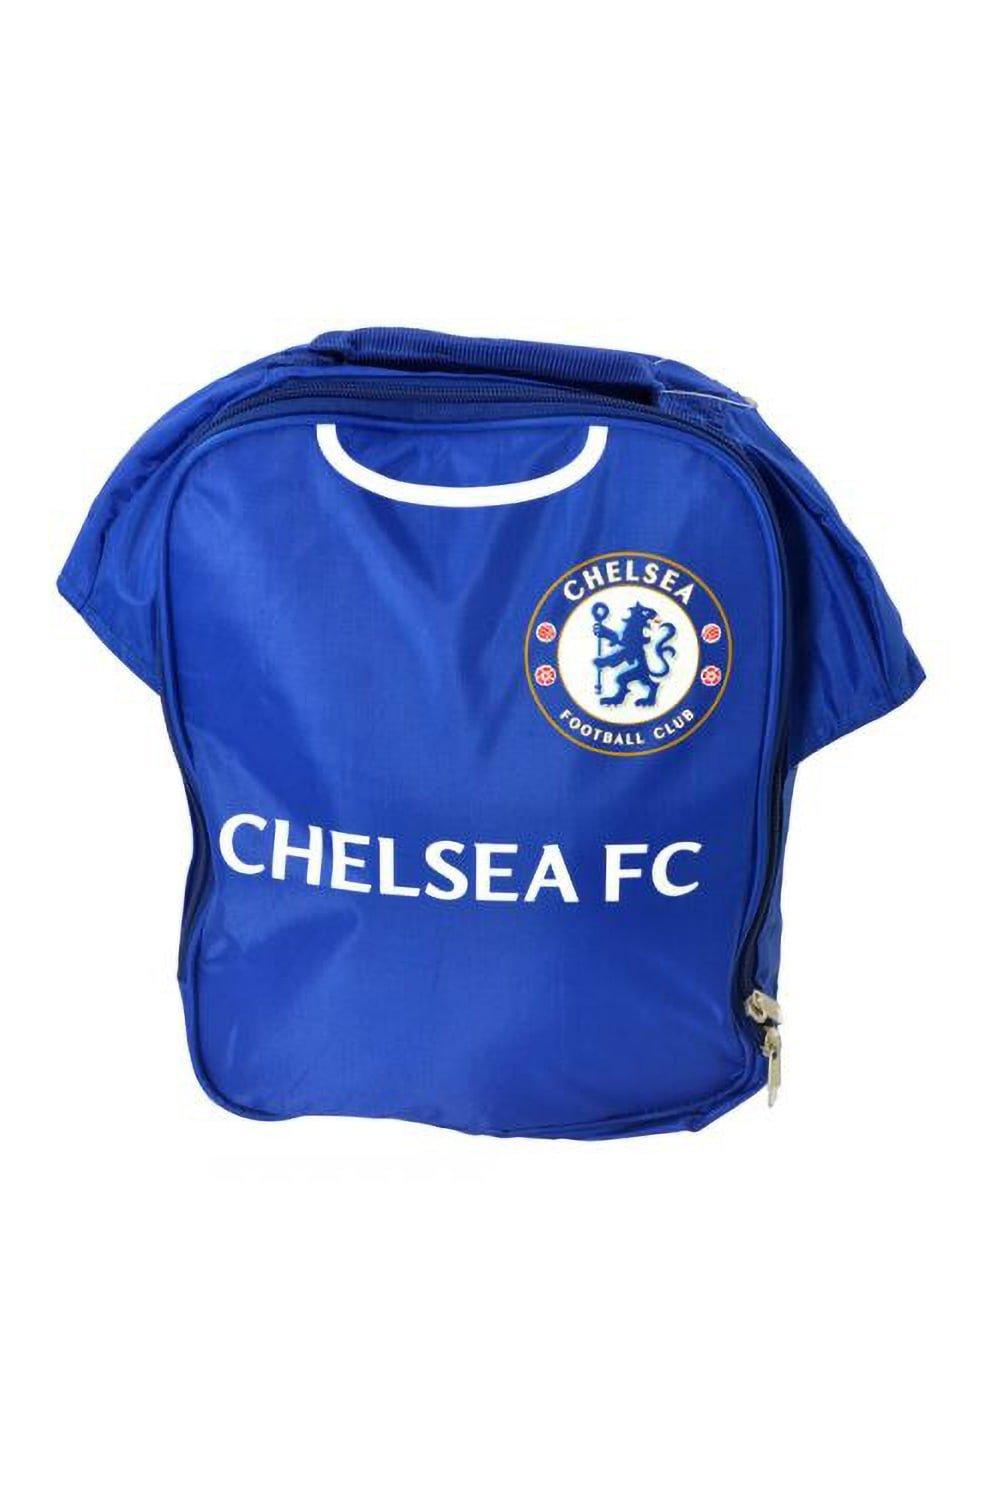 Официальная сумка для обеда футбольной формы Chelsea FC, синий ручка сувенирная кавказ